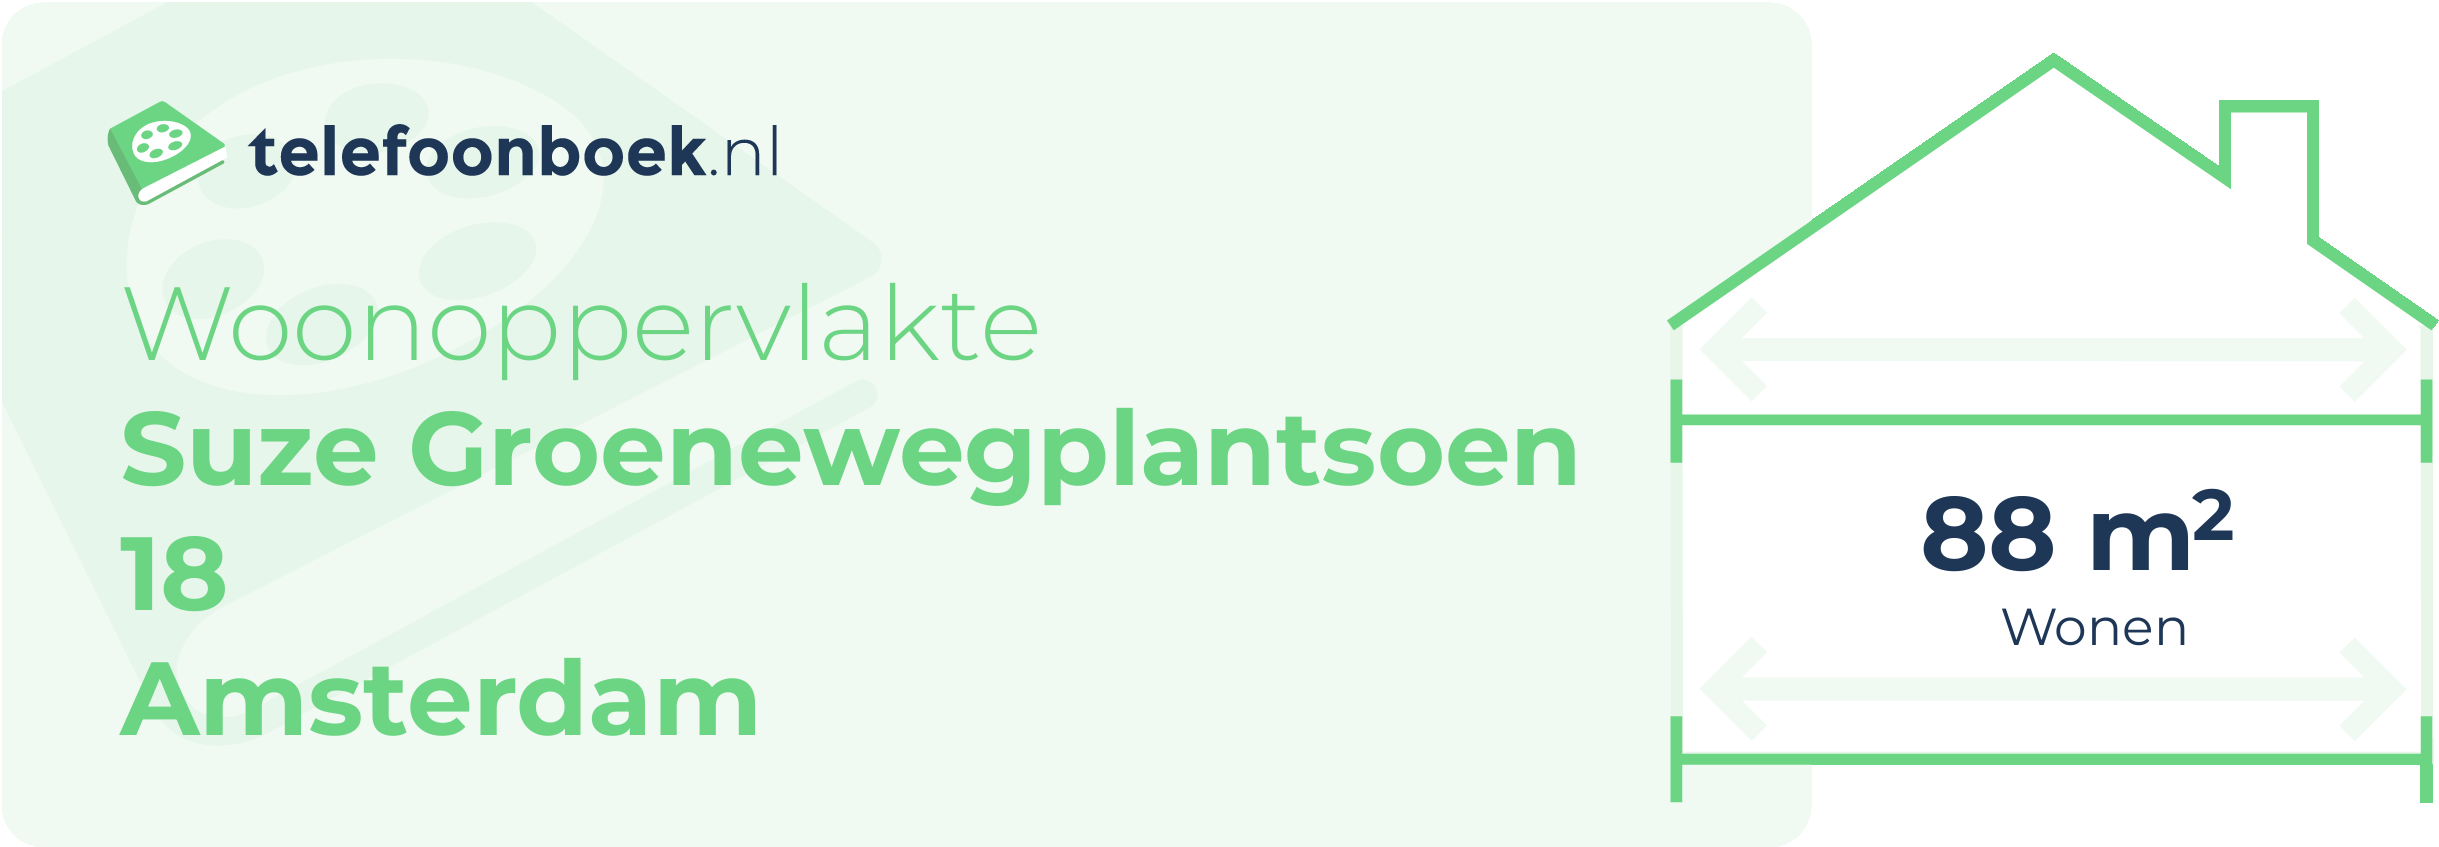 Woonoppervlakte Suze Groenewegplantsoen 18 Amsterdam